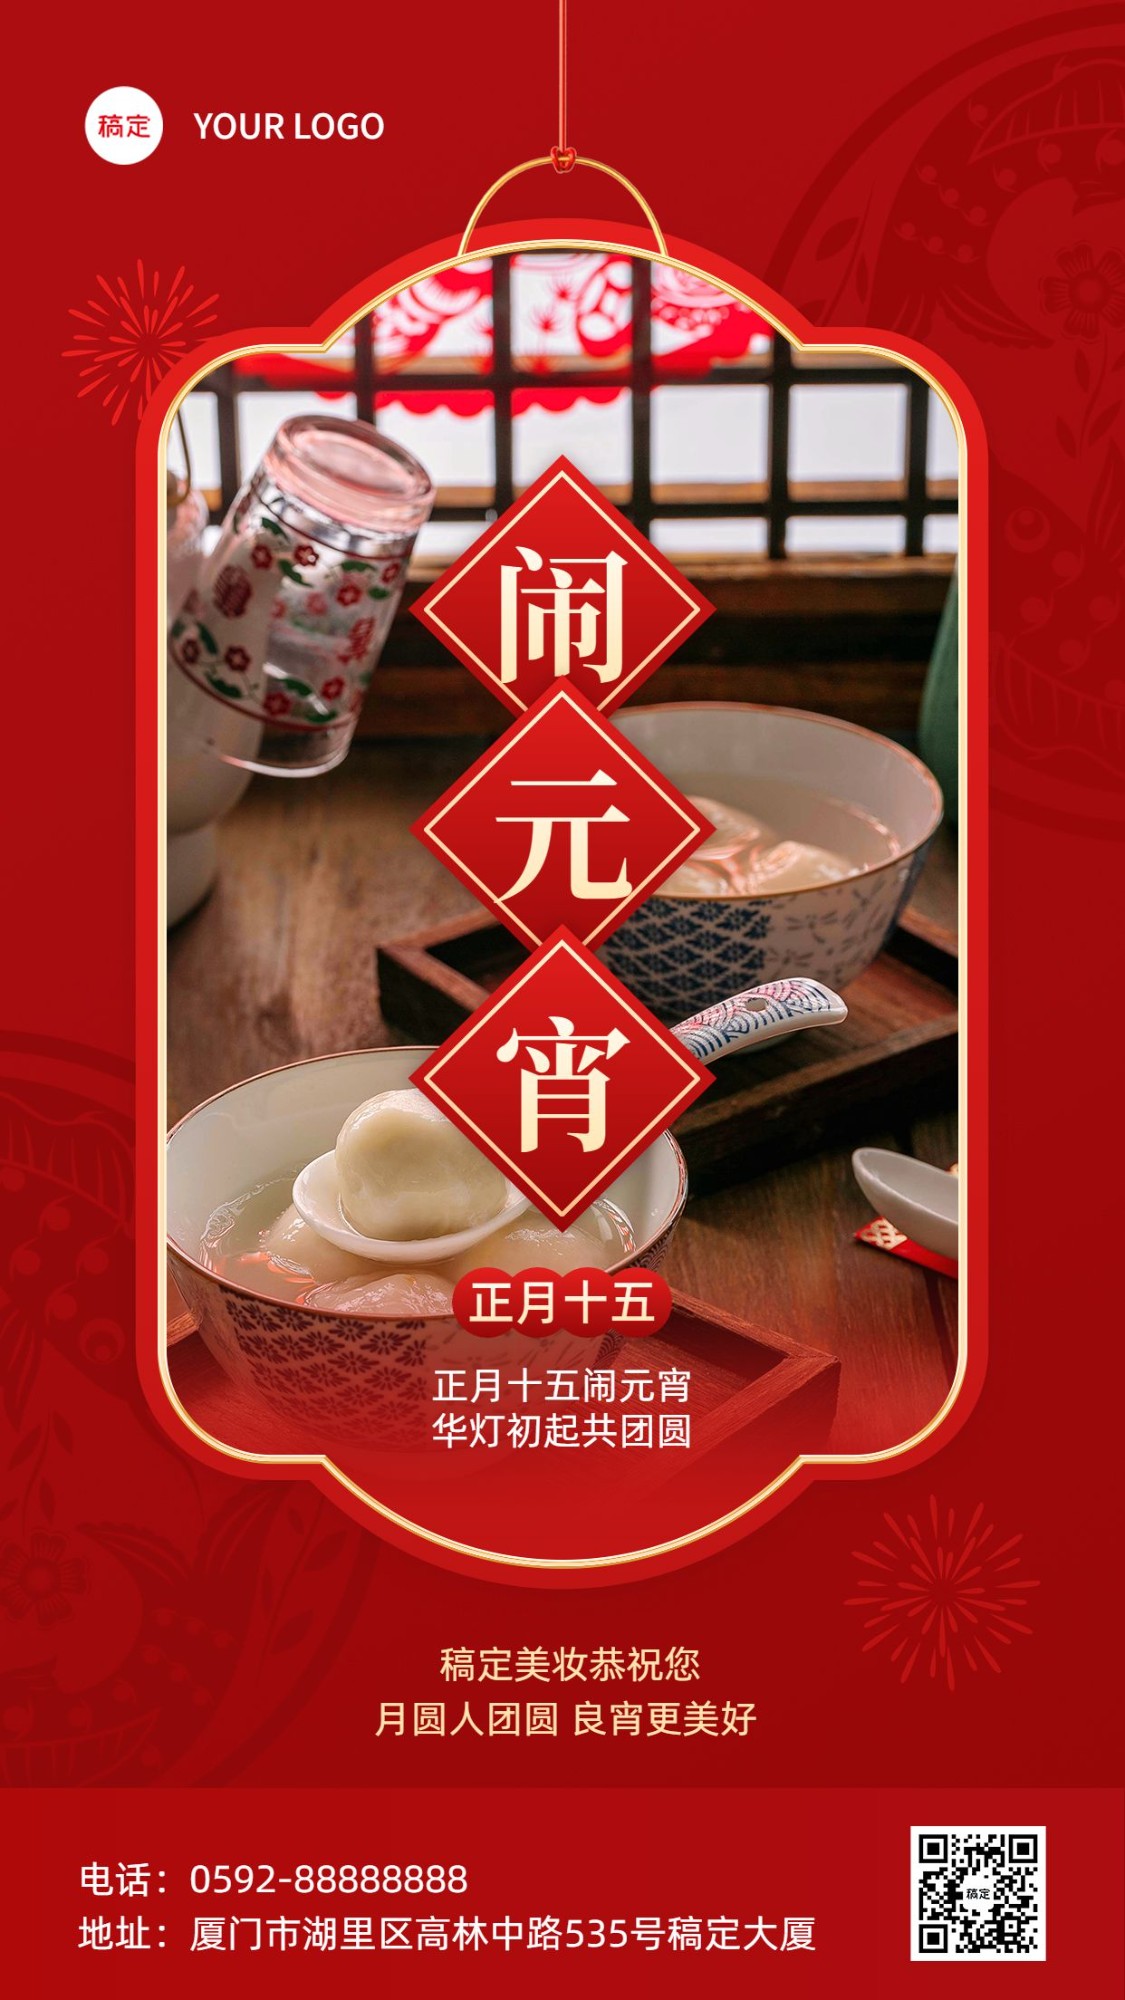 春节正月十五美容美妆节日祝福中式喜庆感套装竖版海报预览效果